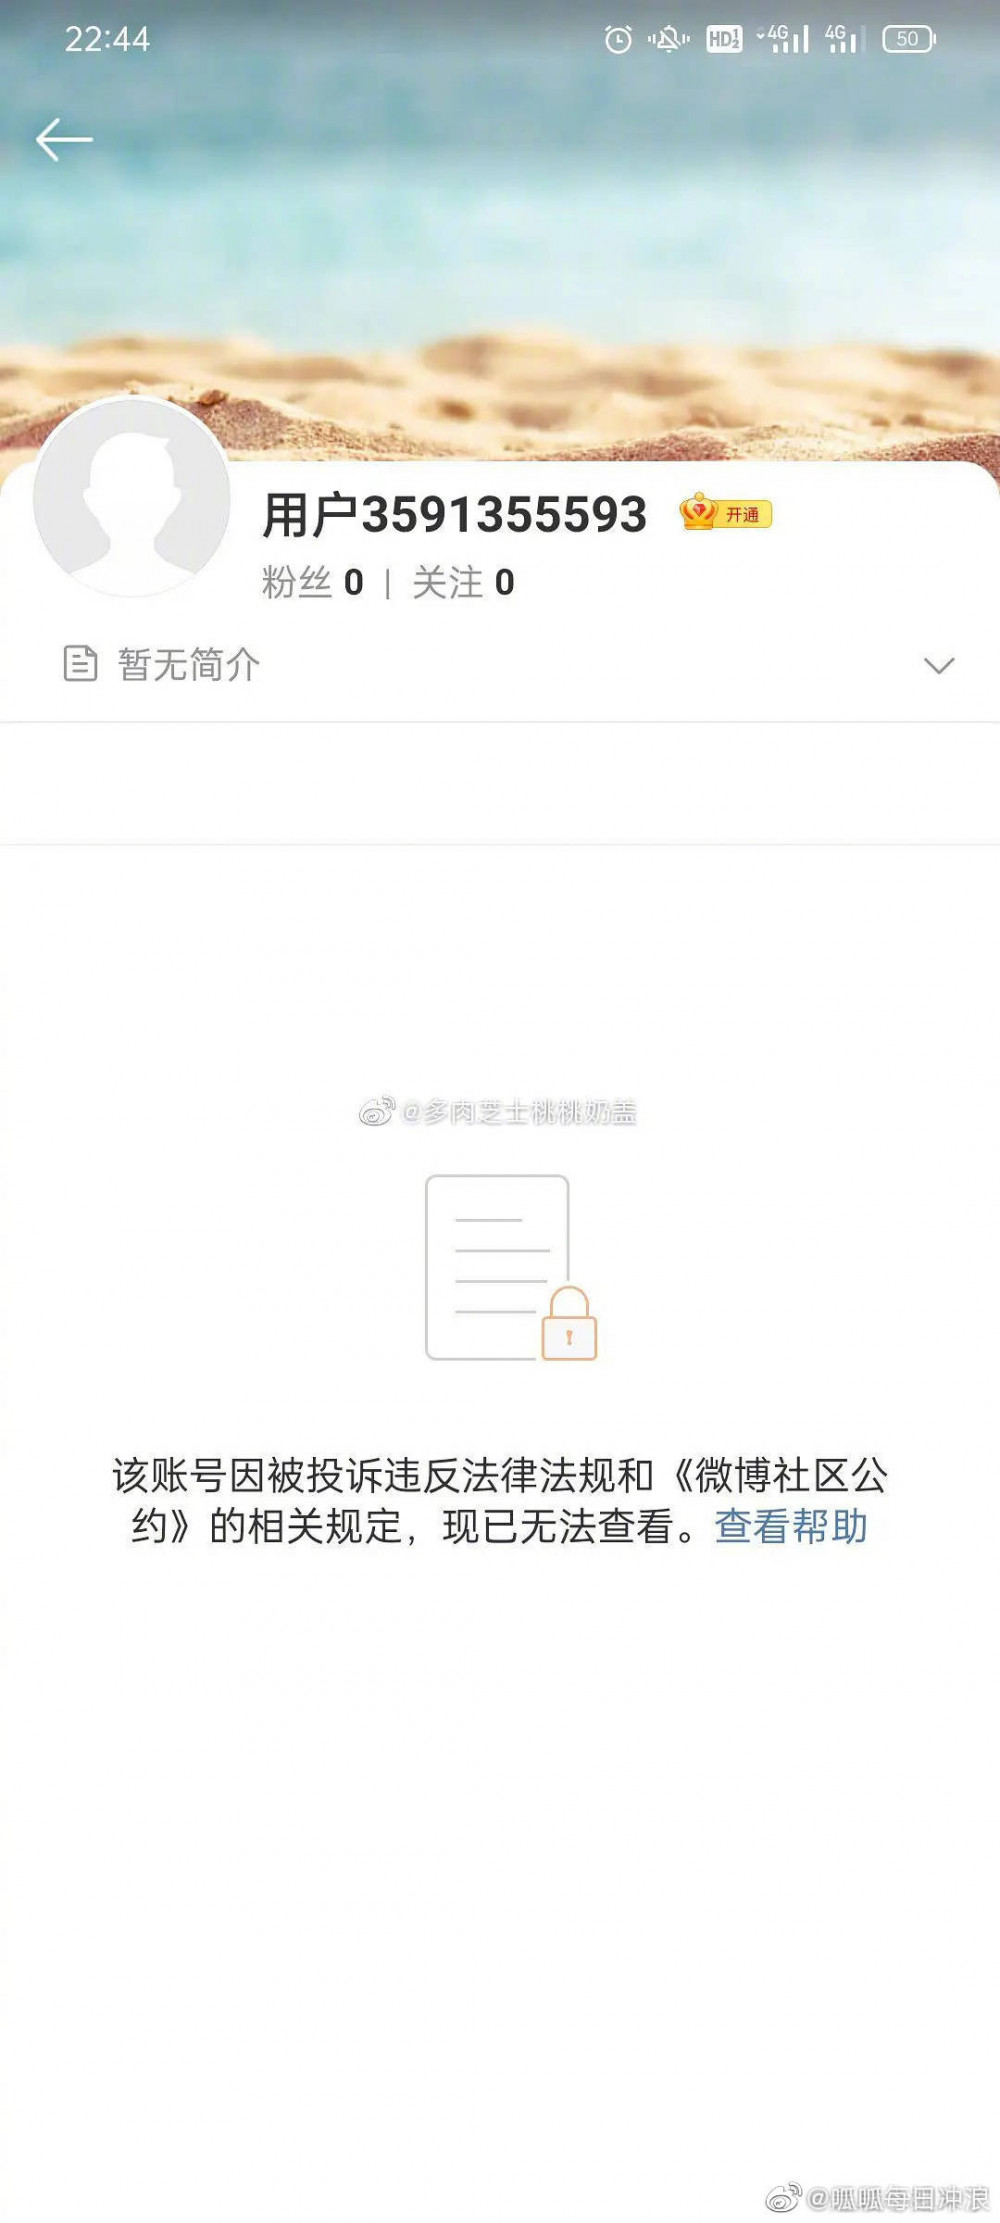 Weibo удалили официальные аккаунты Криса Ву и его лейбла на своей платформе